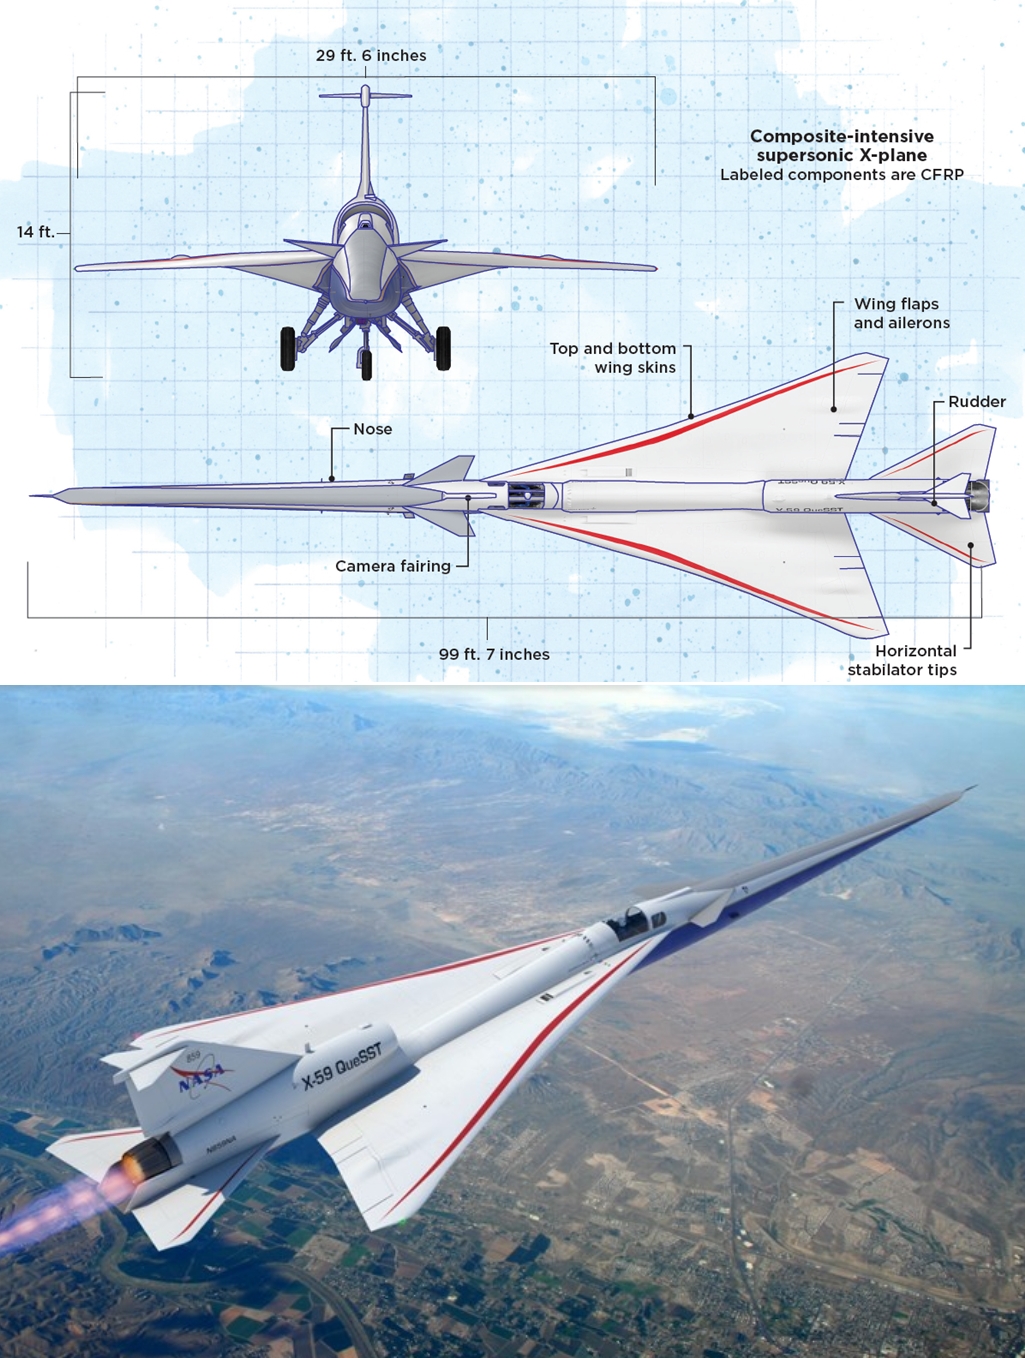 NASAㆍ록히드마틴, 초음속 항공기 X-59 공개…'사일런트 소닉붐' 무엇?